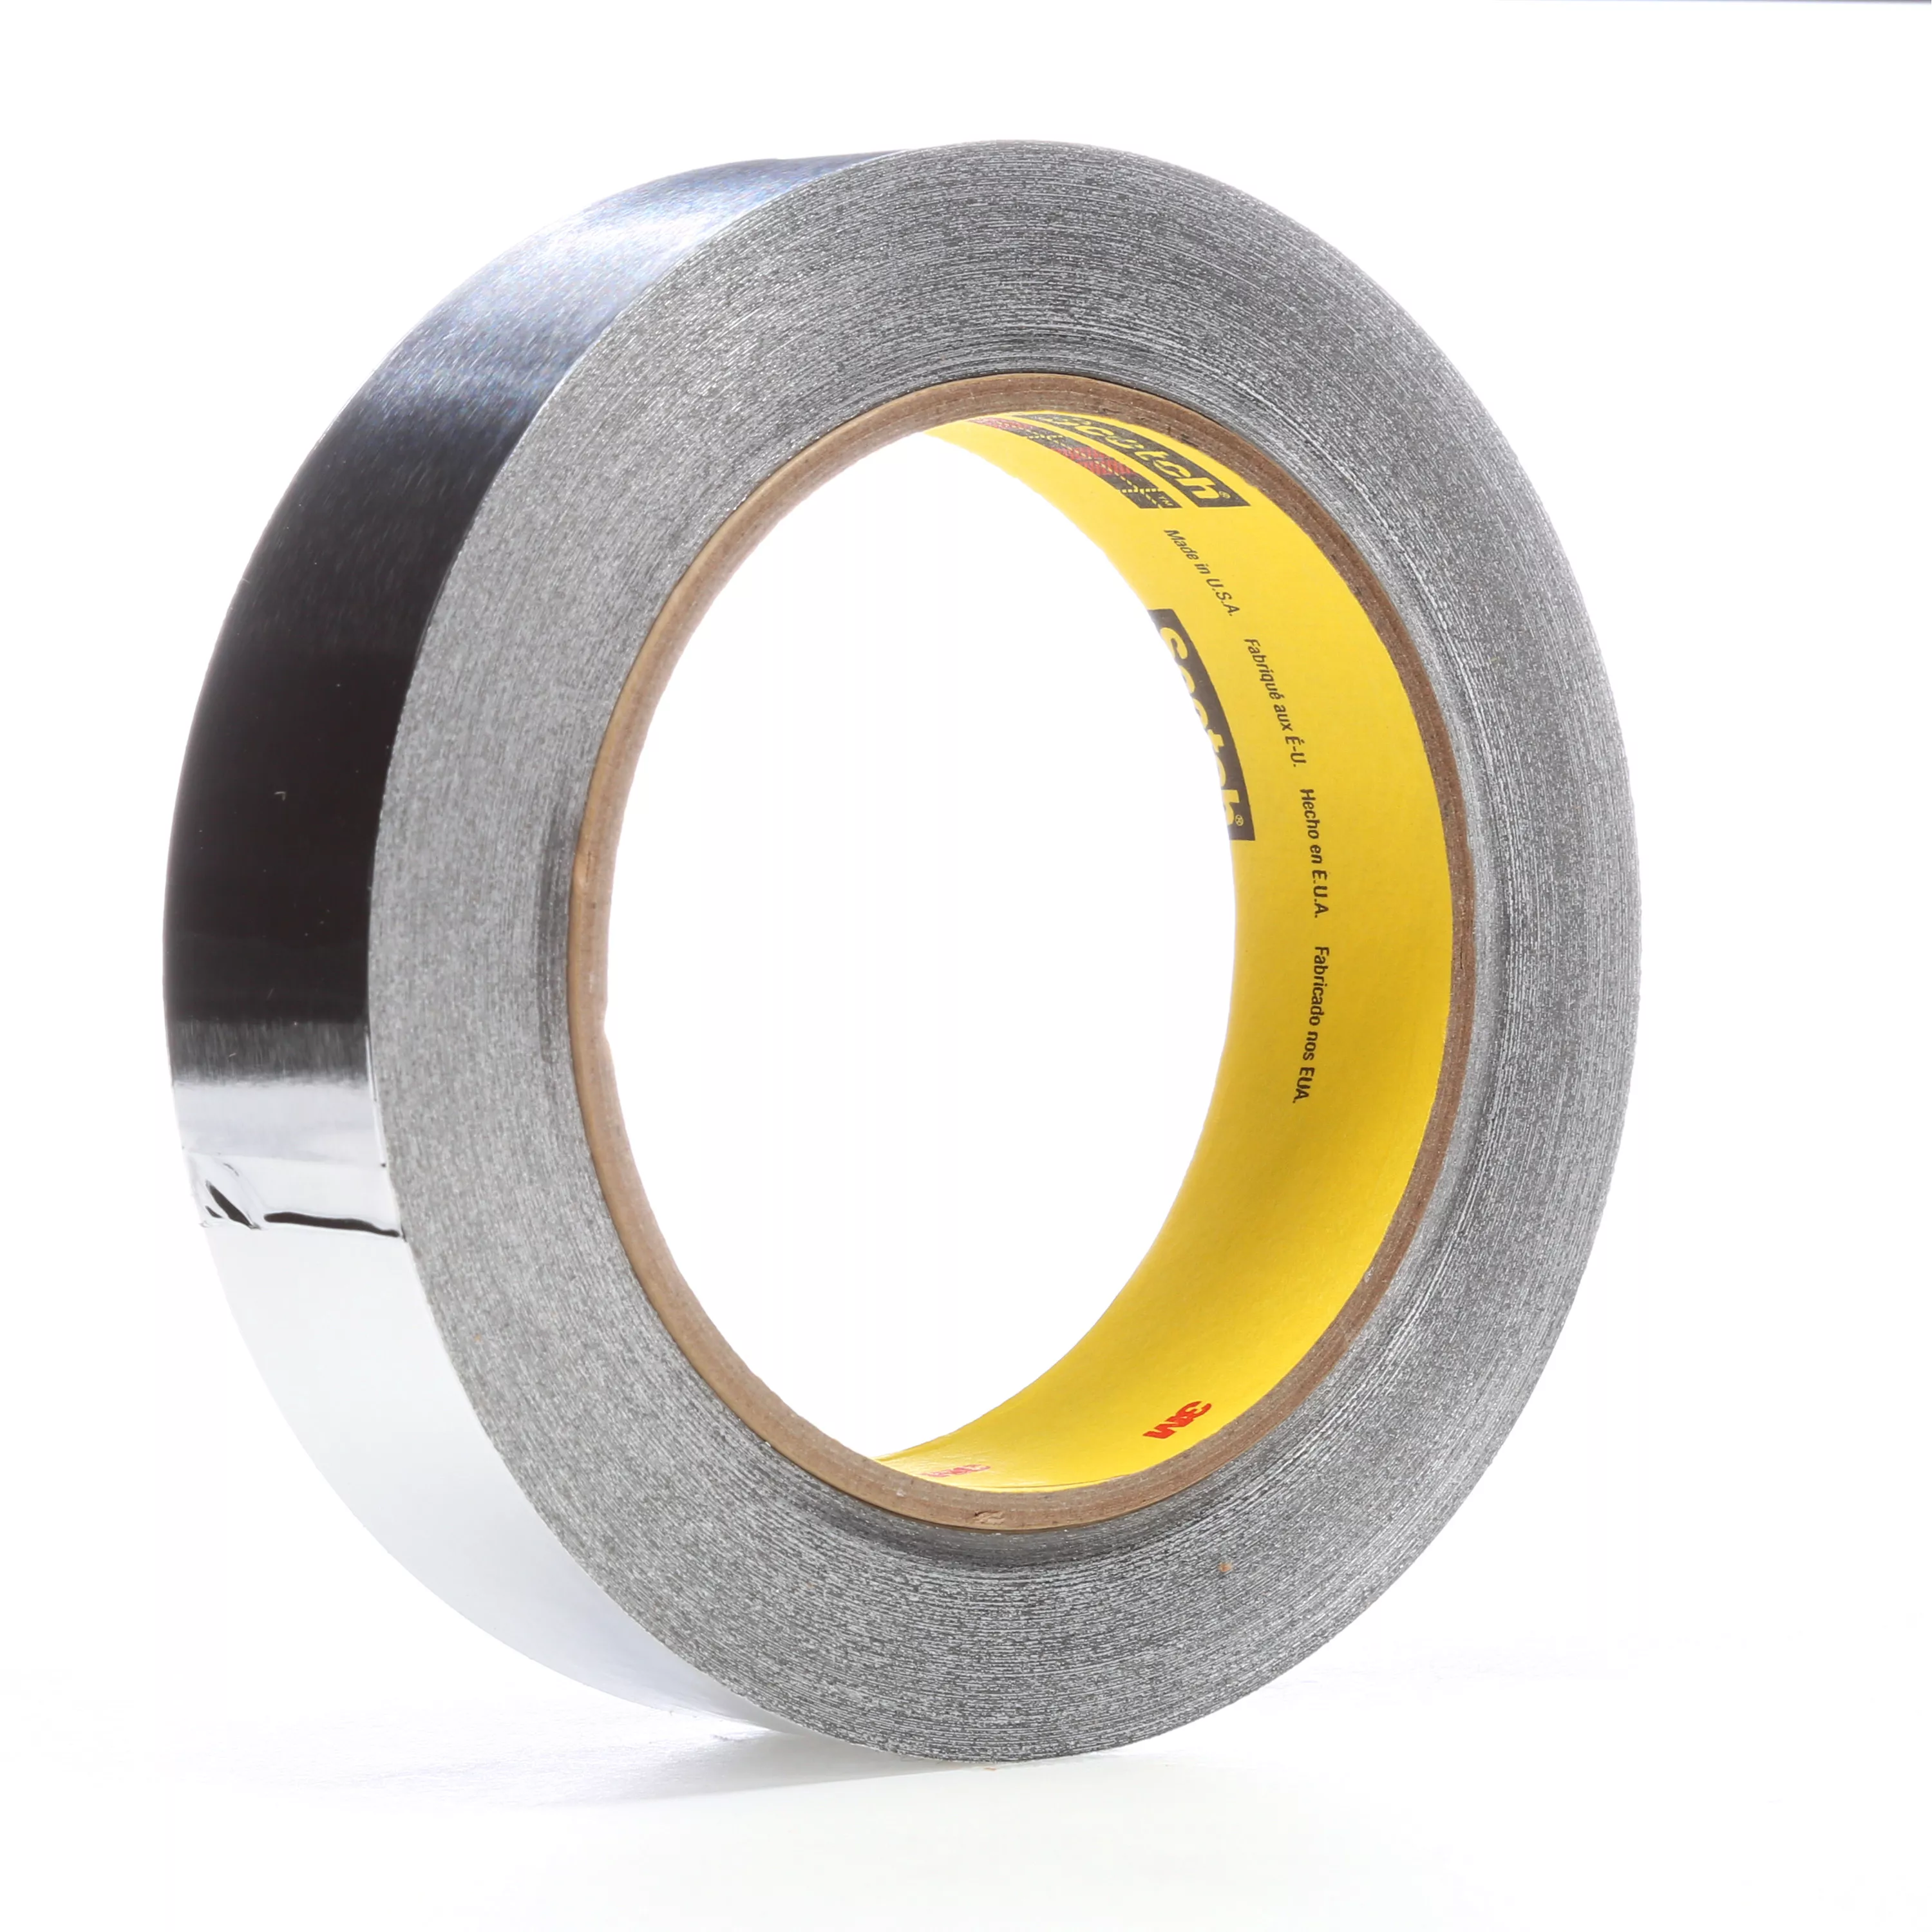 3M™ High Temperature Aluminum Foil Tape 433, Silver, 2 in x 60 yd, 3.6 mil, 5 Rolls/Case